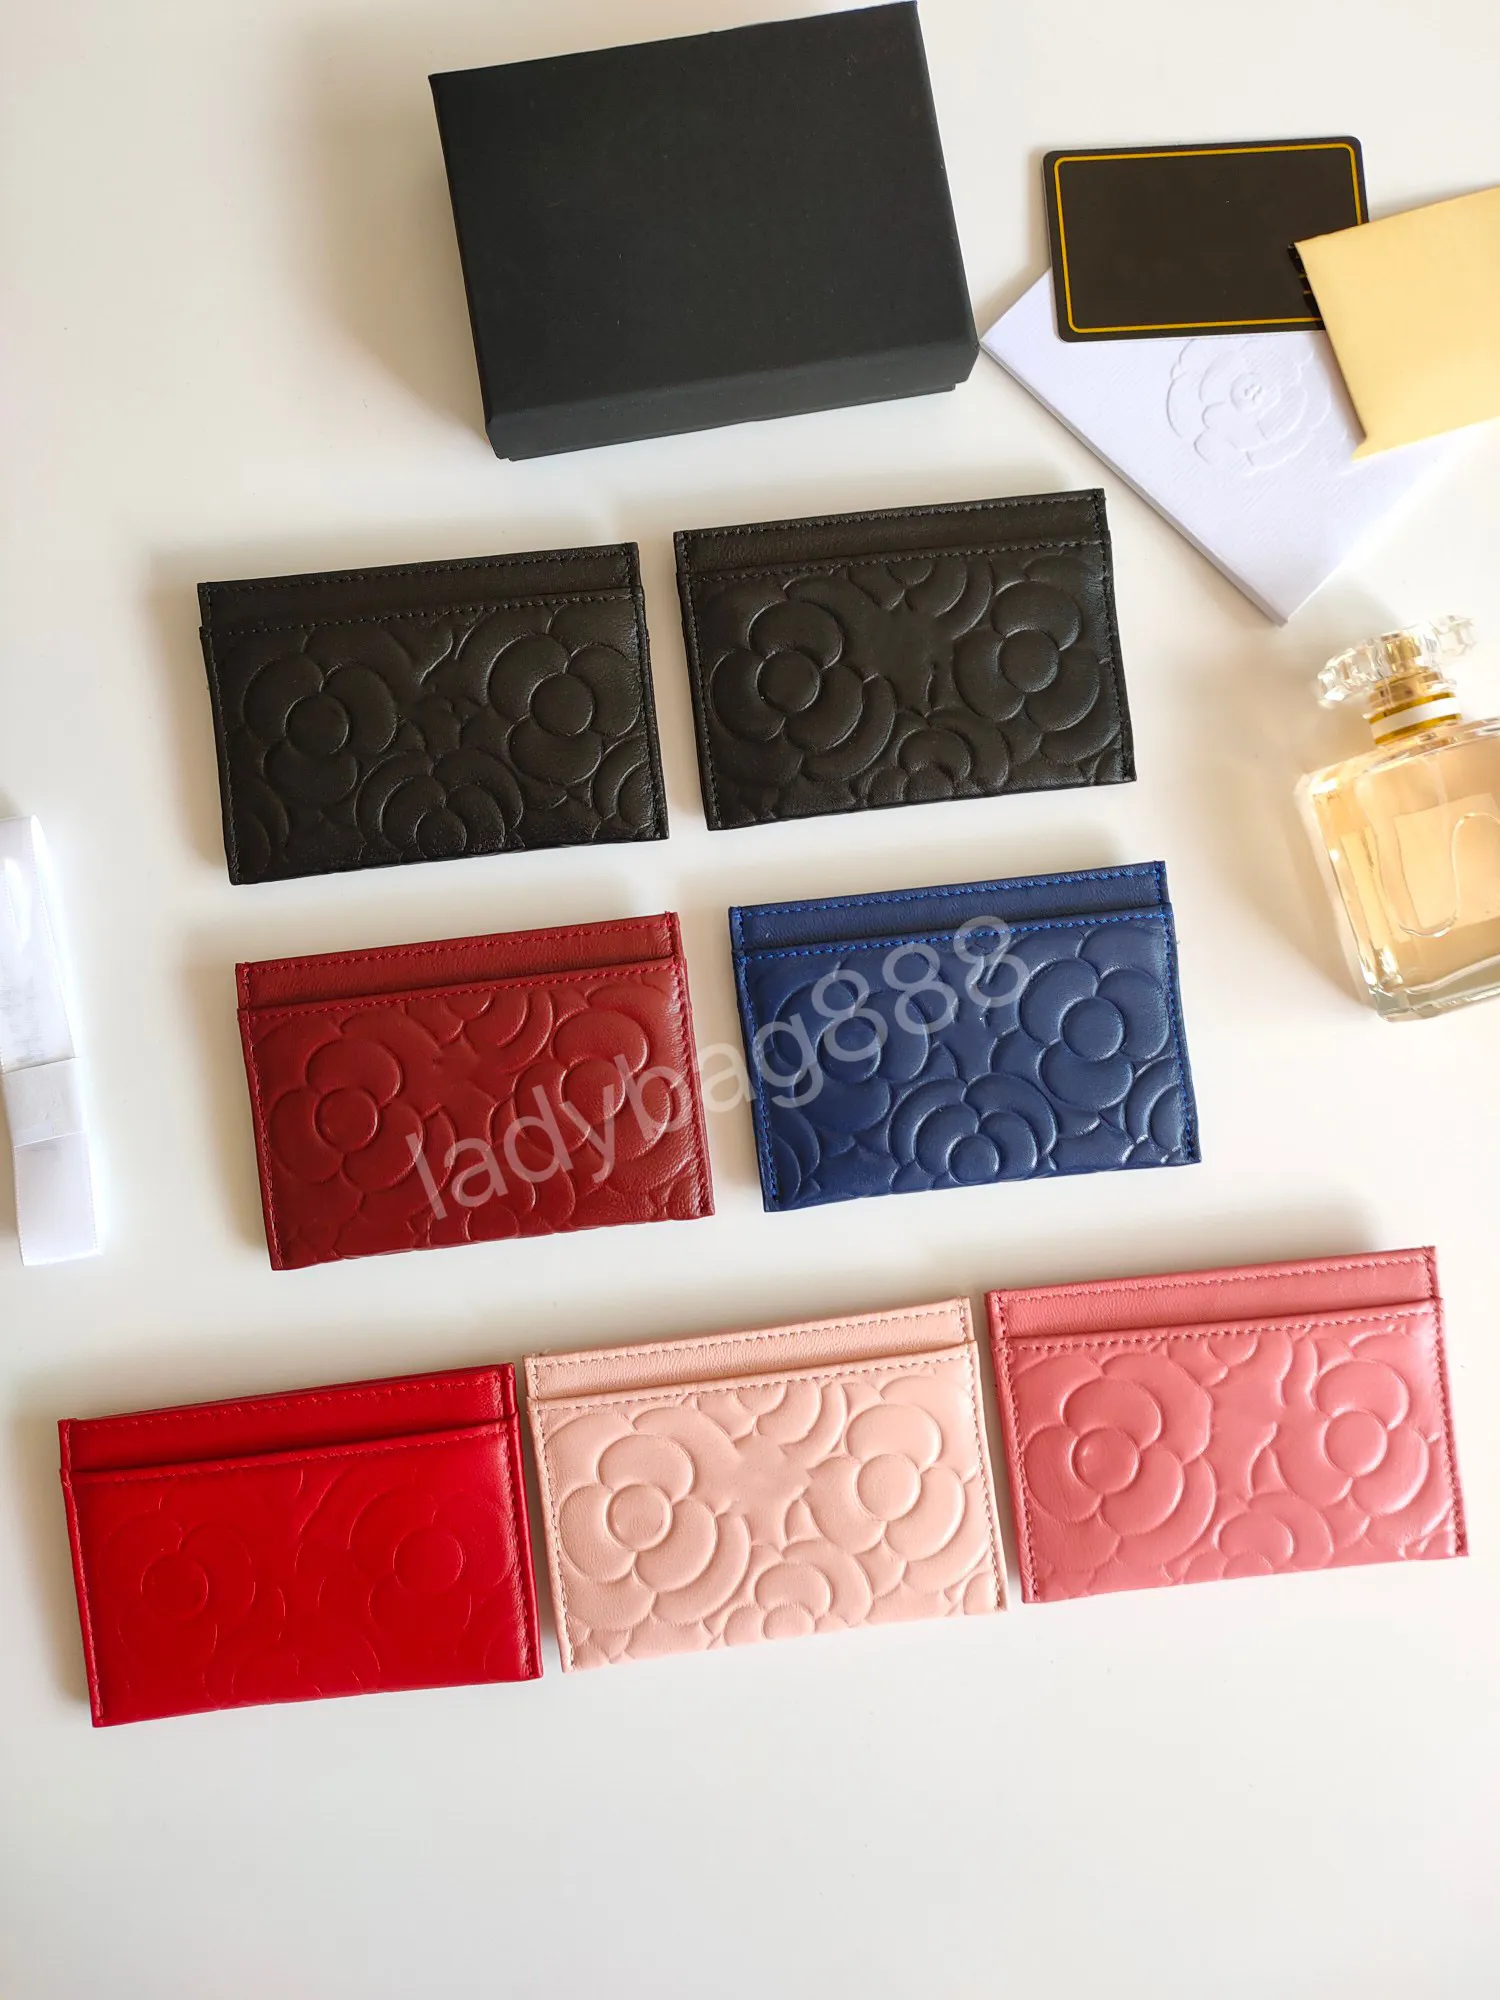 CC 럭셔리 디자이너 카드 클립 여성 지갑 신용 지갑 지갑 여성의 클래식 퀼트 카드 가방 패션 양 스킨